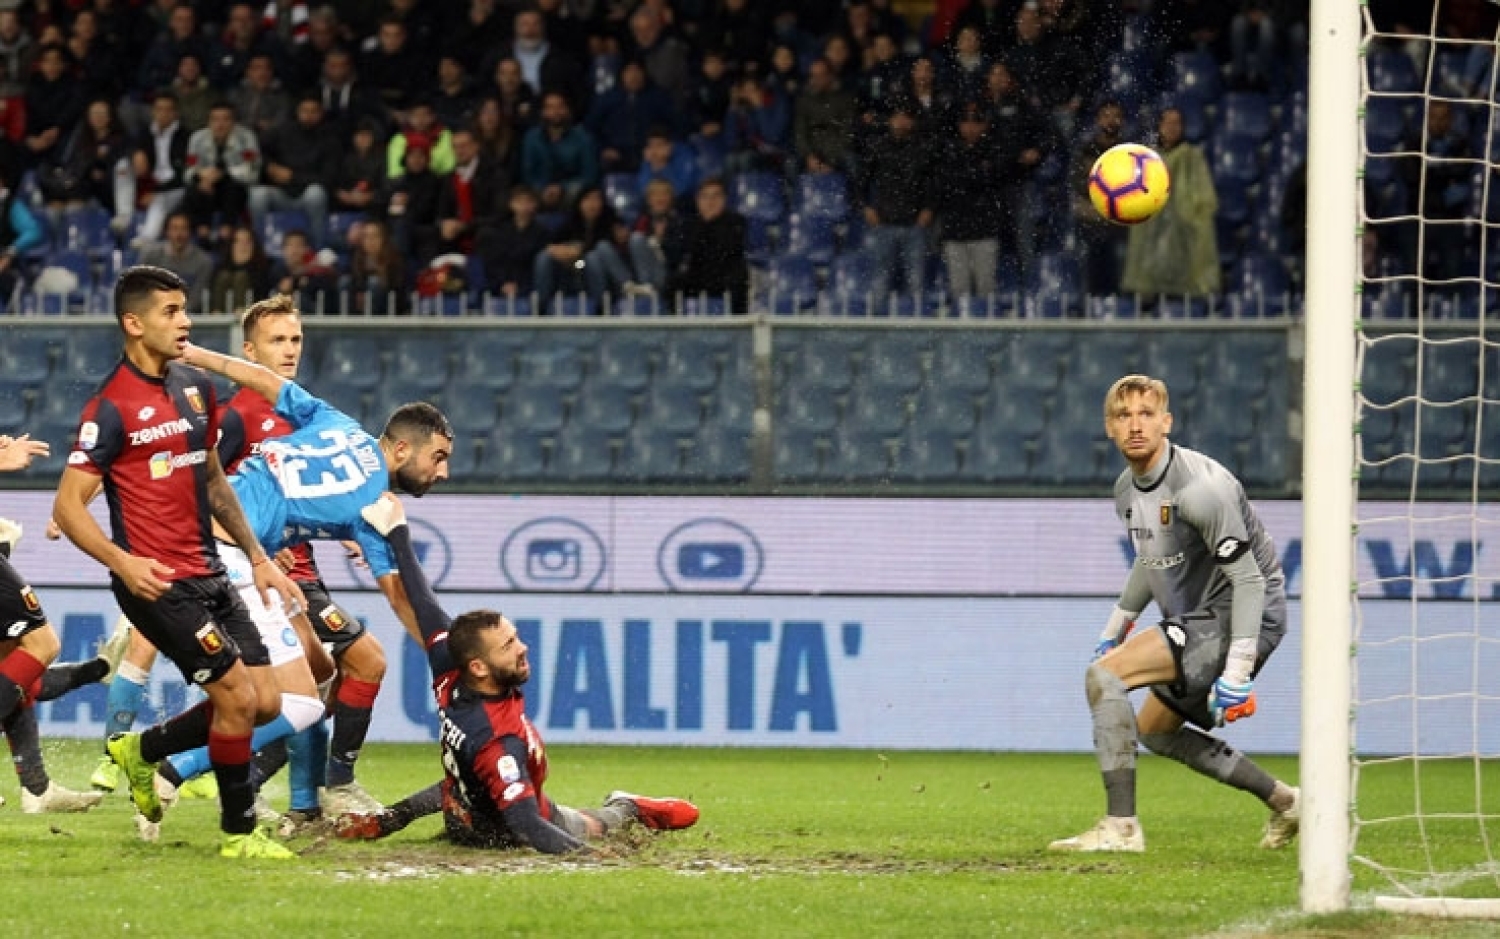 Genoa - Napoli, i precedenti: Ruiz e un'autorete di Biraschi per l' 1 - 2 del Napoli nello scorso campionato